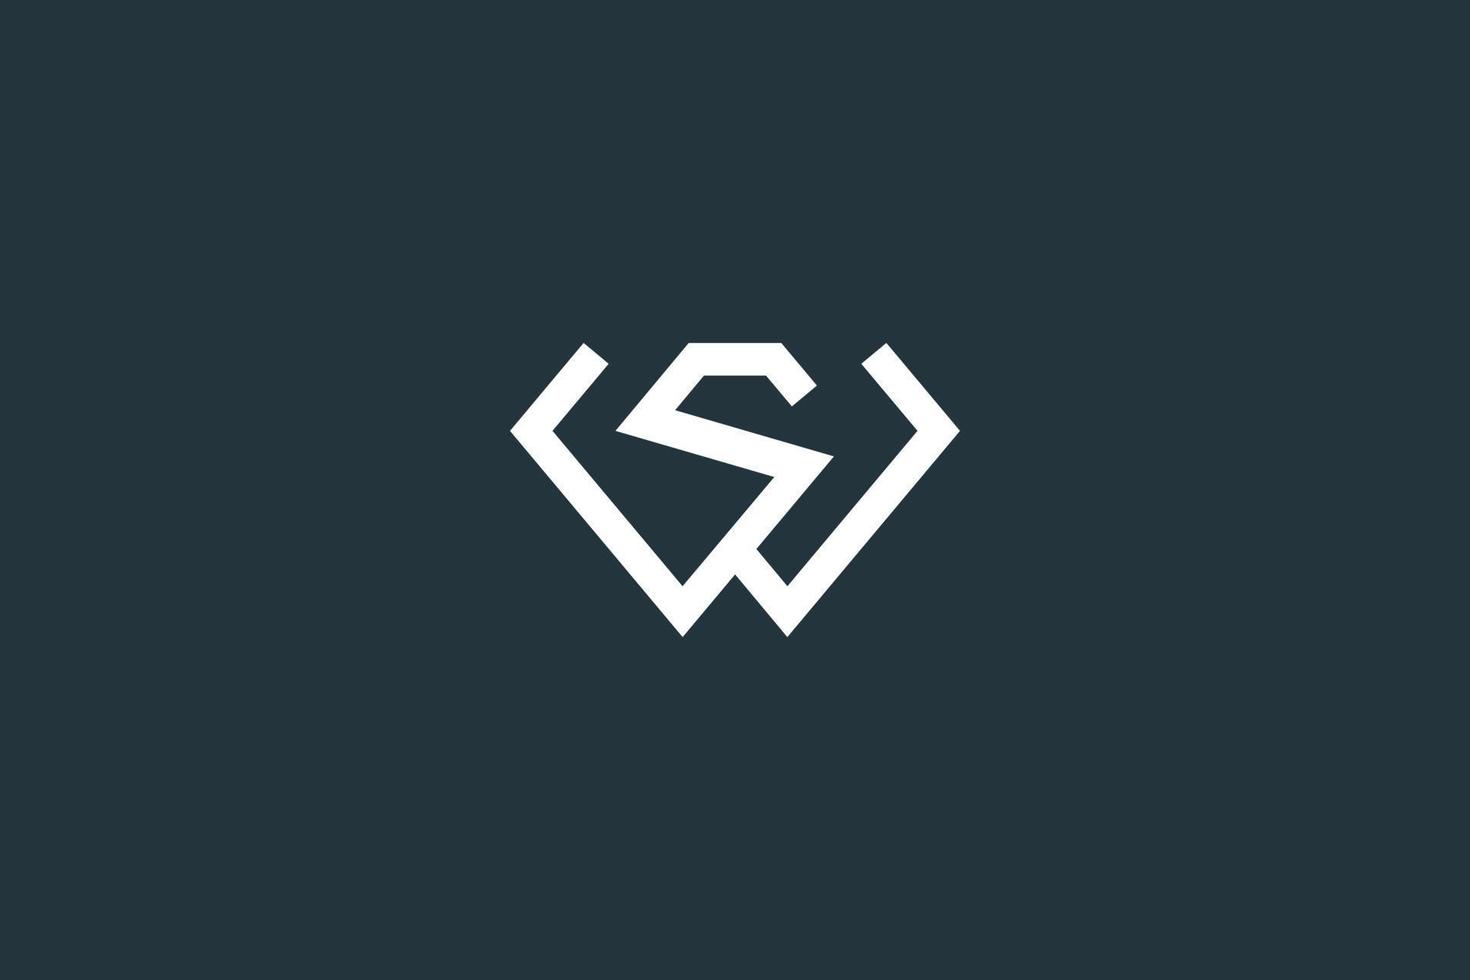 lettera iniziale ws o sw logo design template vettoriale